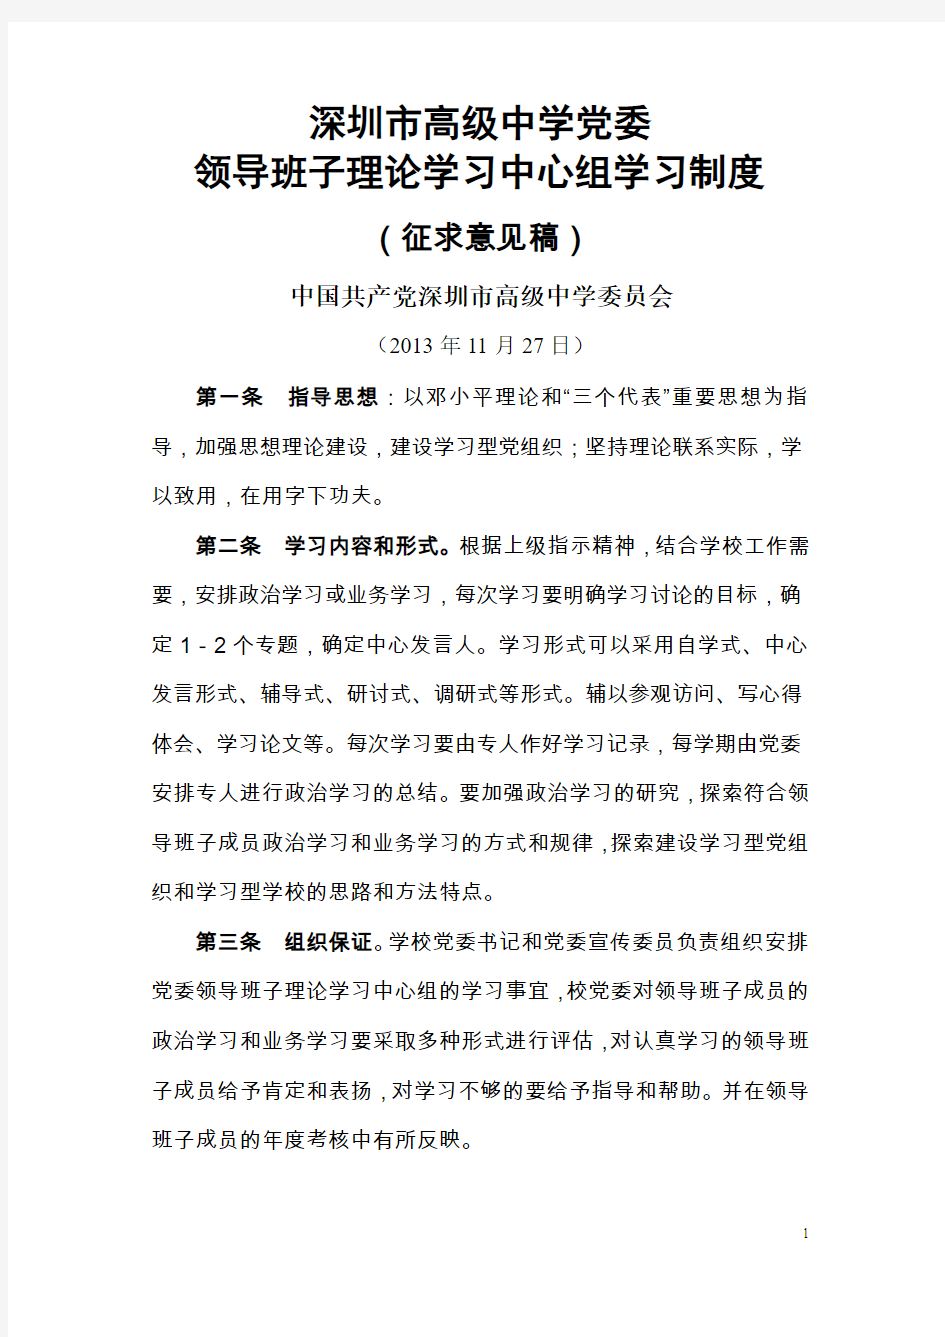 深圳市高级中学党委领导班子理论学习中心组学习制度